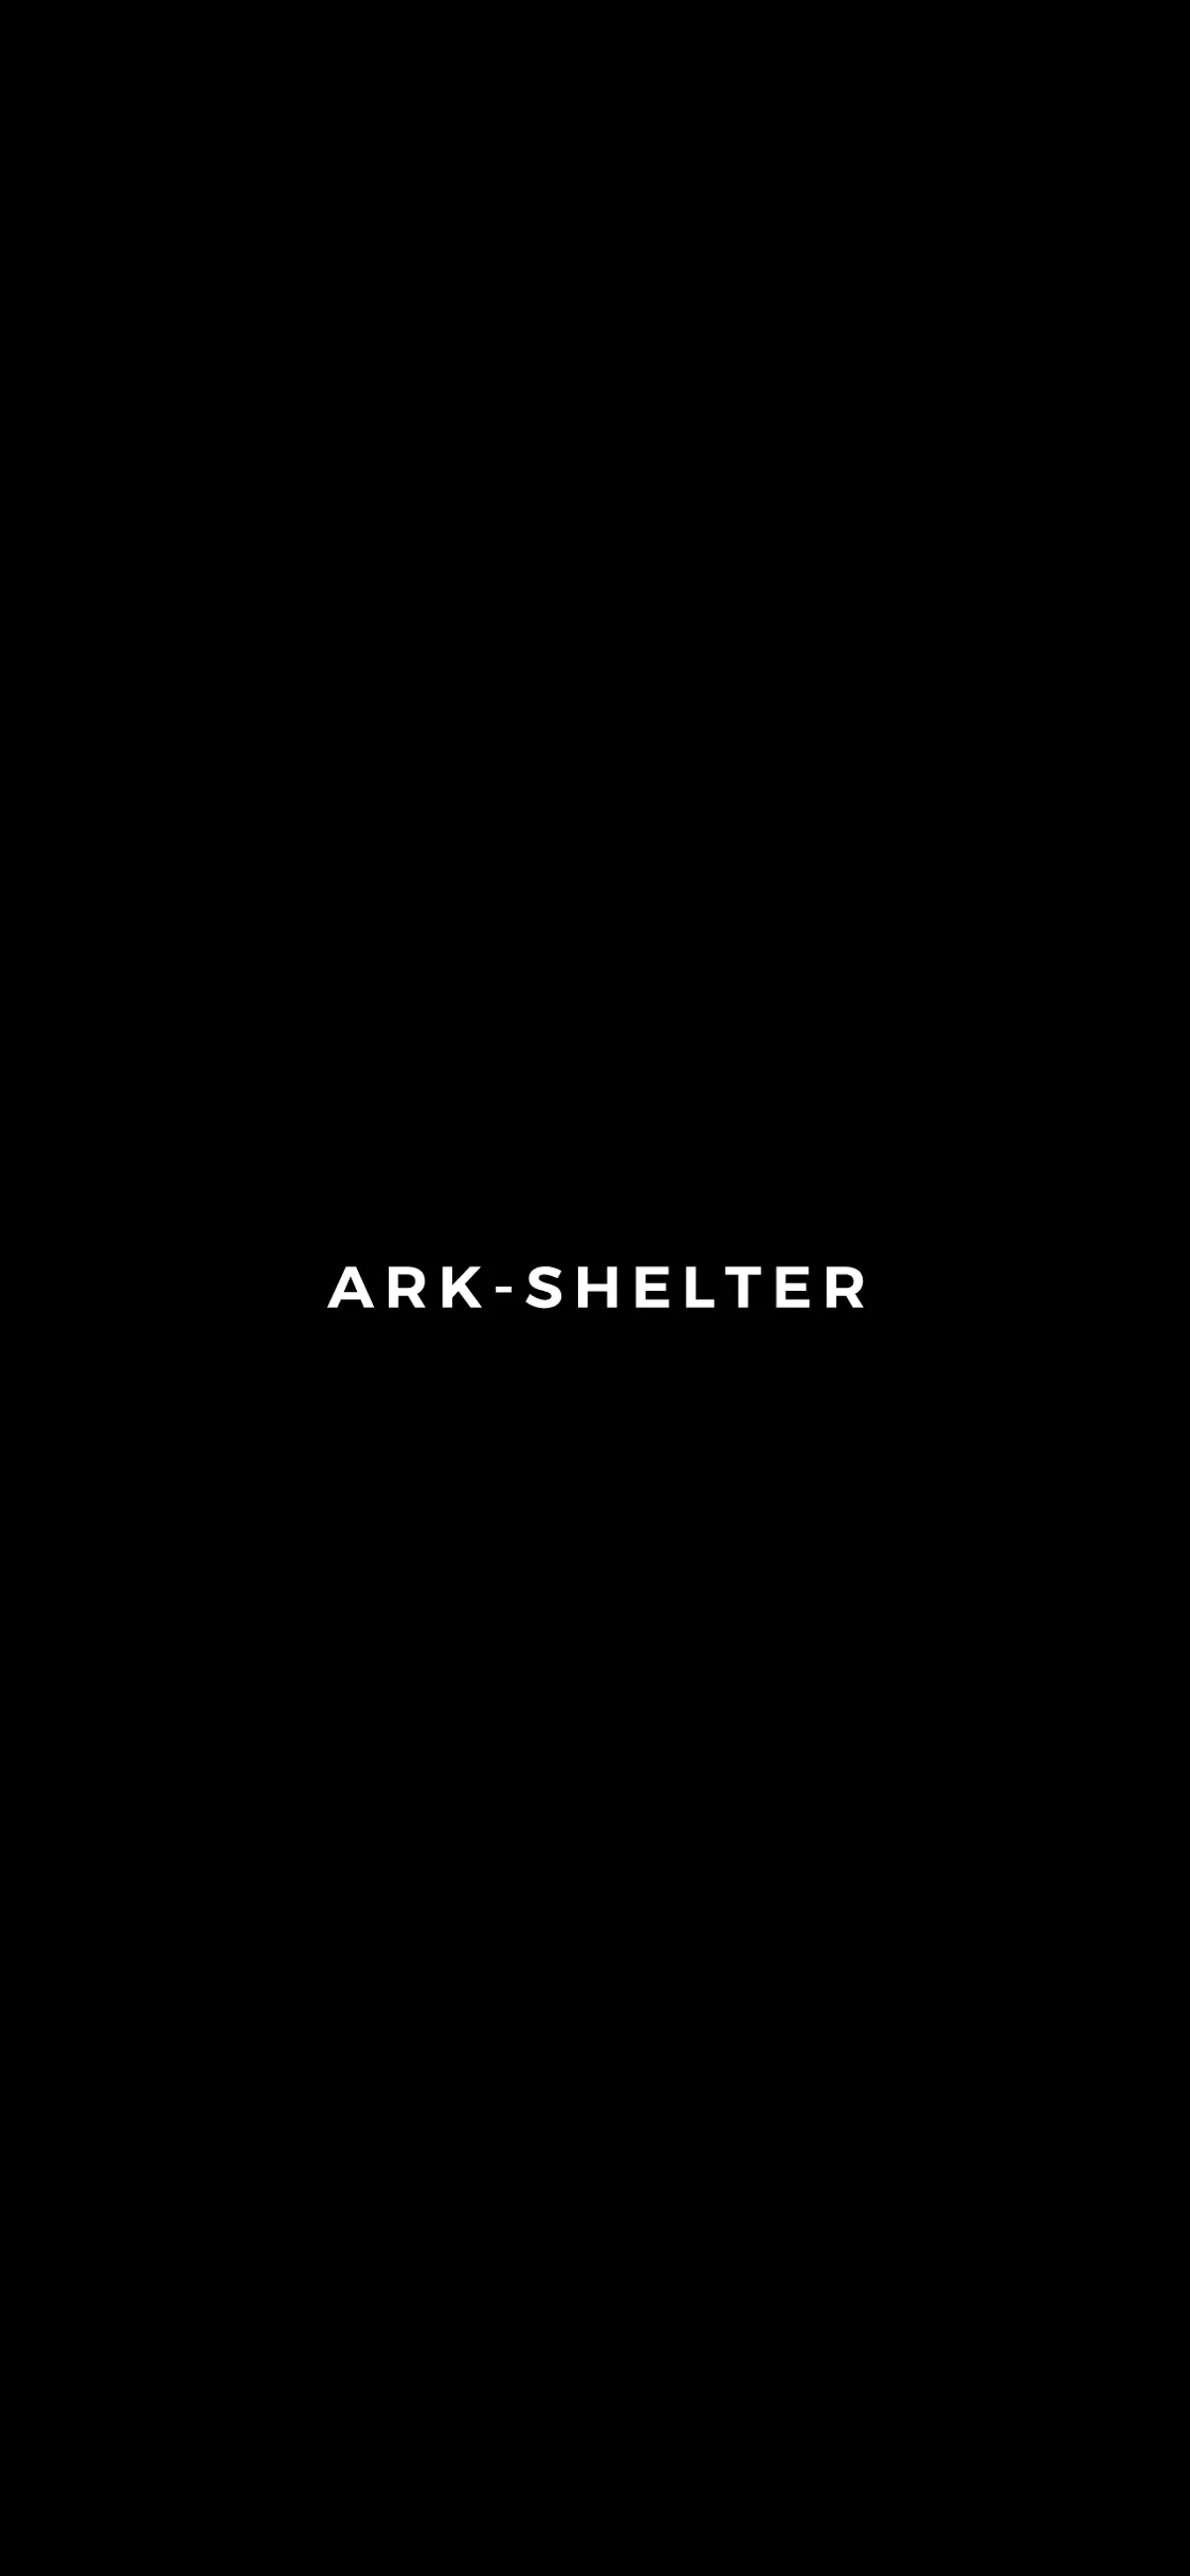 キャプチャ画面 会社名:Ark-Shelterプロジェクト名:Ark Shelter 画面名:A デバイス名:SPカテゴリ:不動産・建築・土木タグ:A,SP